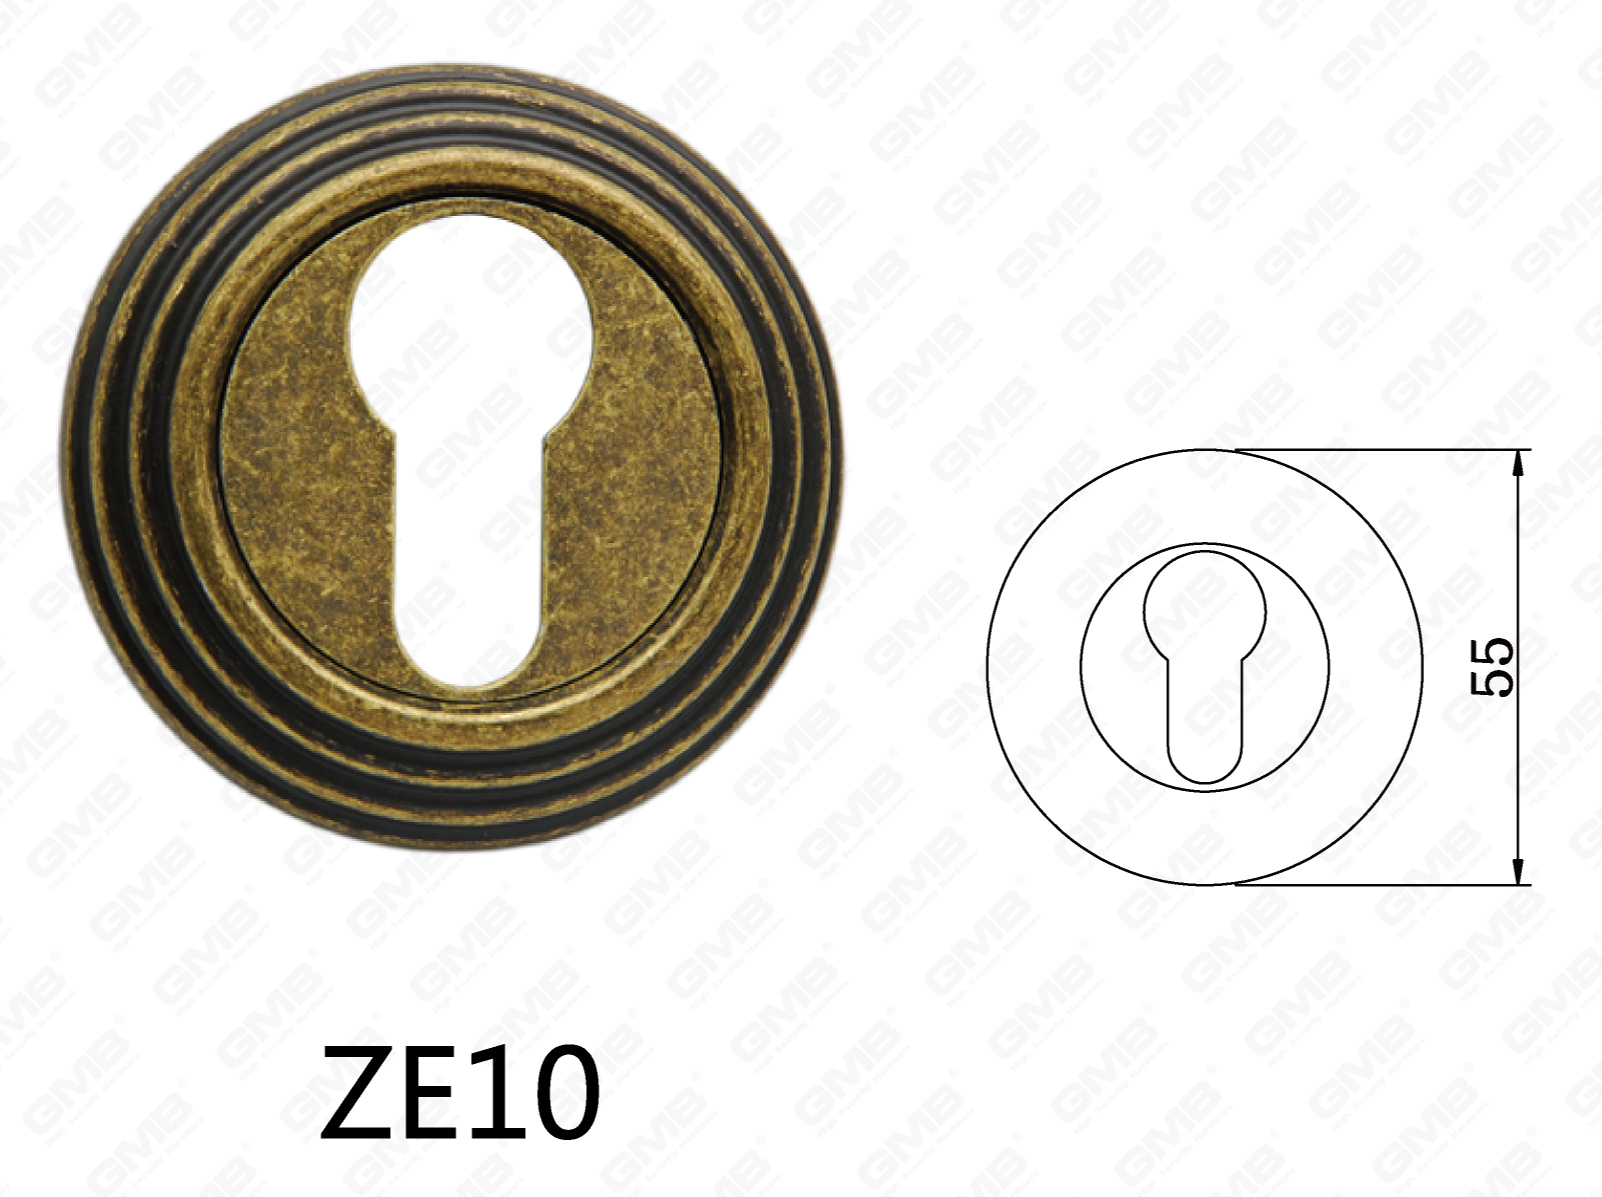 Roseta redonda de manija de puerta de aluminio de aleación de zinc Zamak (ZE10)